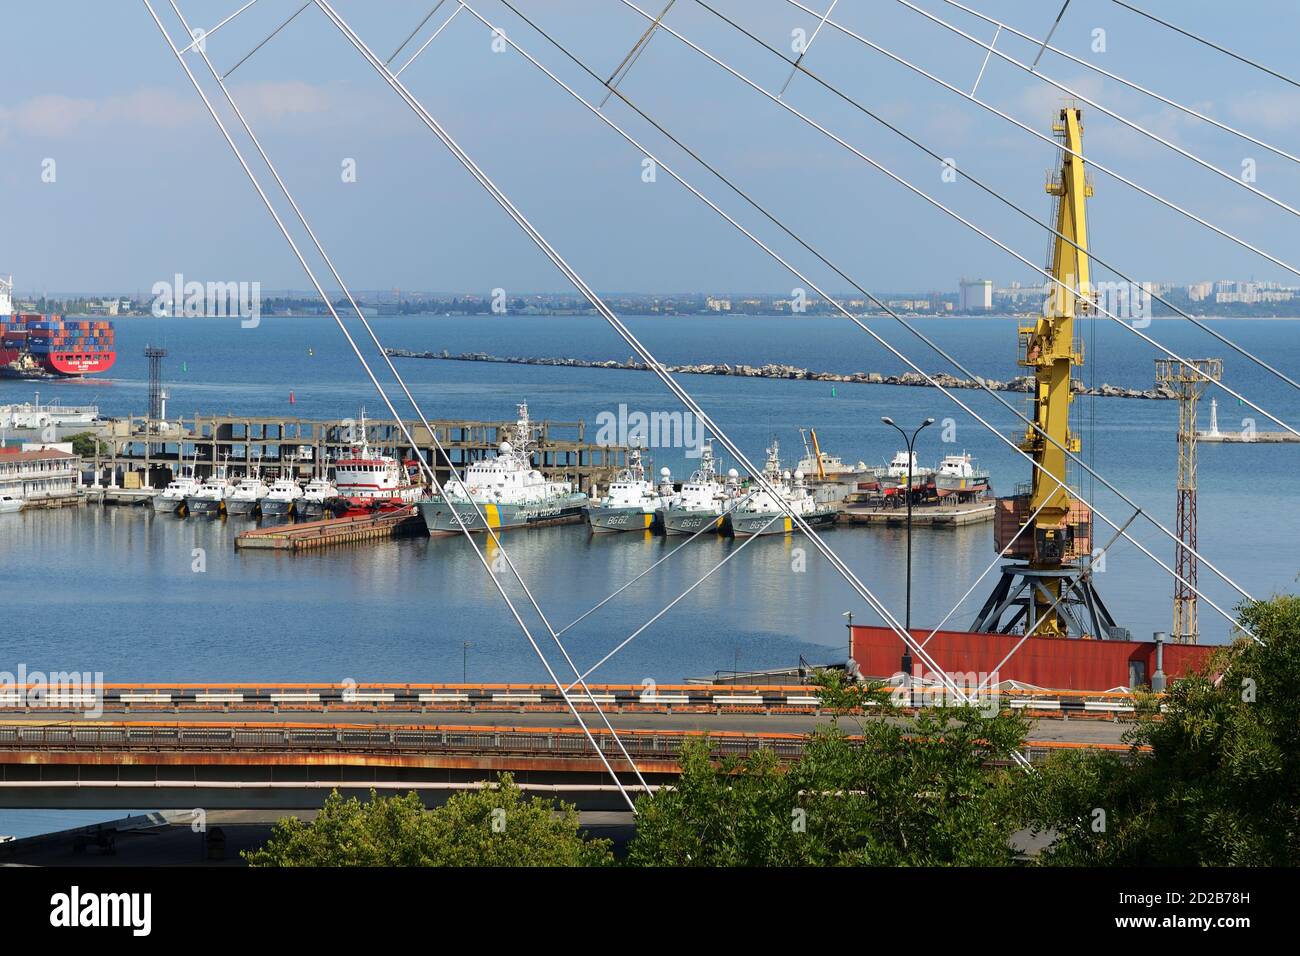 ODESA, UCRANIA - SEPTIEMBRE 25: La opinión sobre los barcos en el puerto de Odesa el 25 de septiembre de 2020 en Odesa, Ucrania. Foto de stock